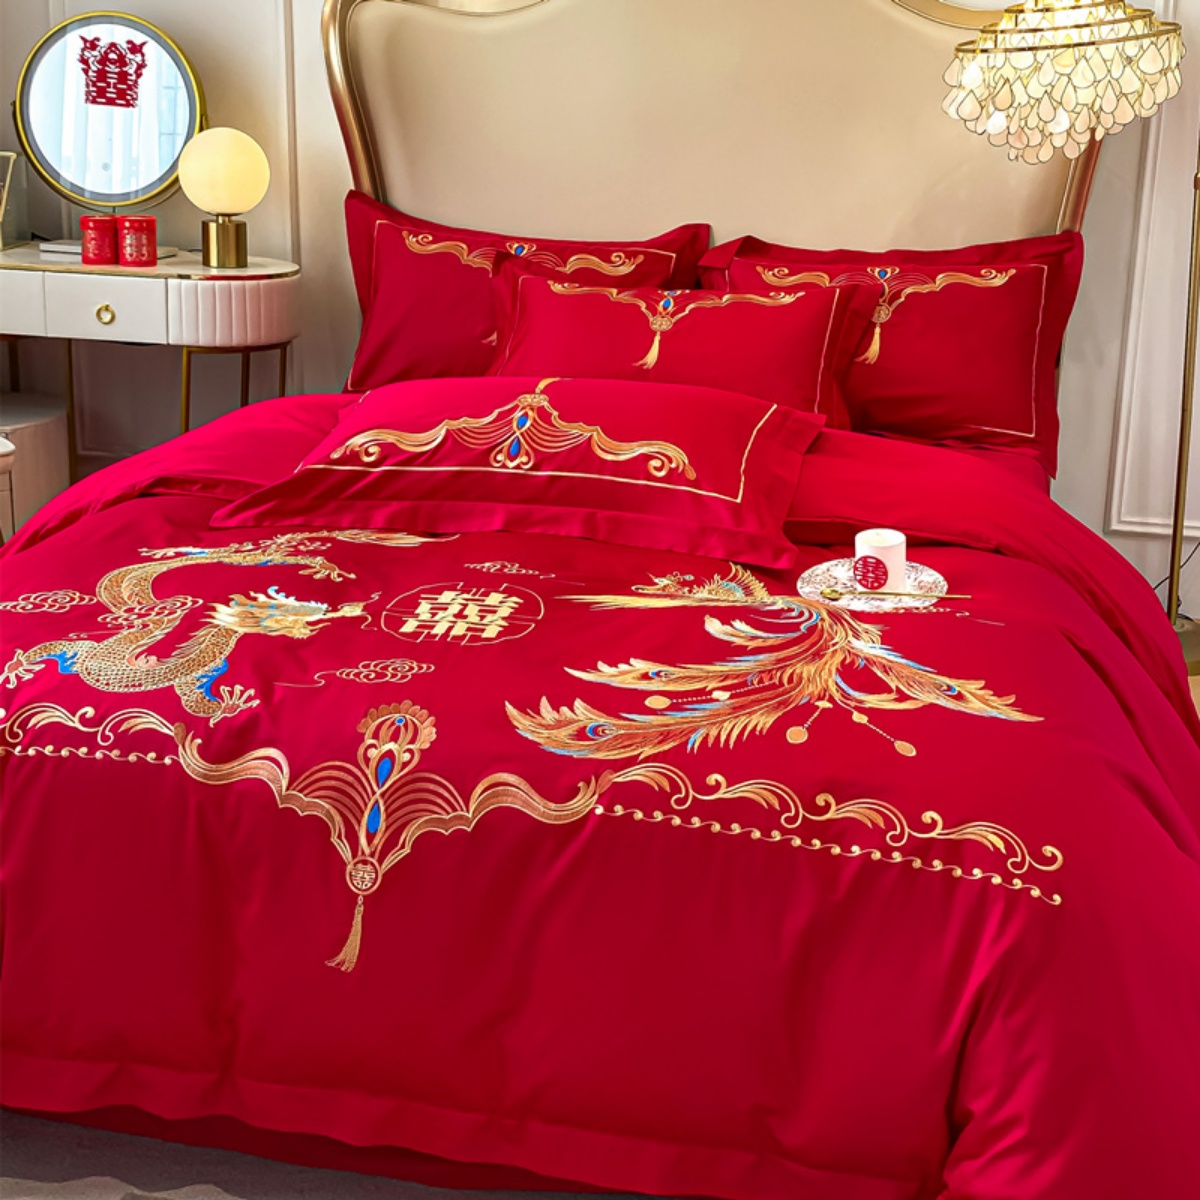 高档中式结婚四件套大红色床单被套纯棉龙凤刺绣婚庆床上用品婚房